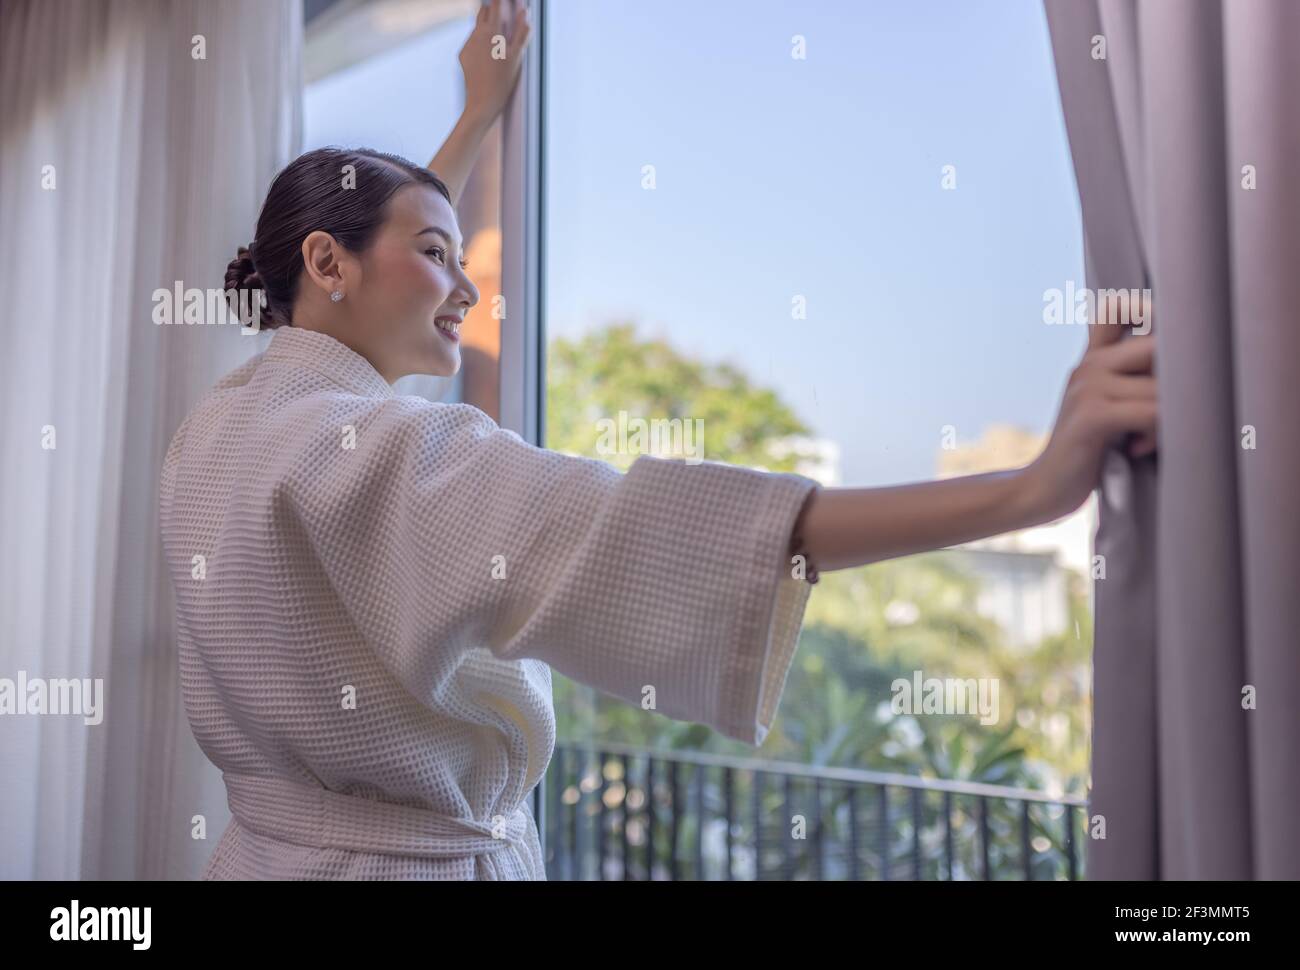 Reisende wunderschöne asiatische Frau lächelt, um über den Aufenthalt zu schauen In der Nähe der Tür im Hotelzimmer Stockfoto